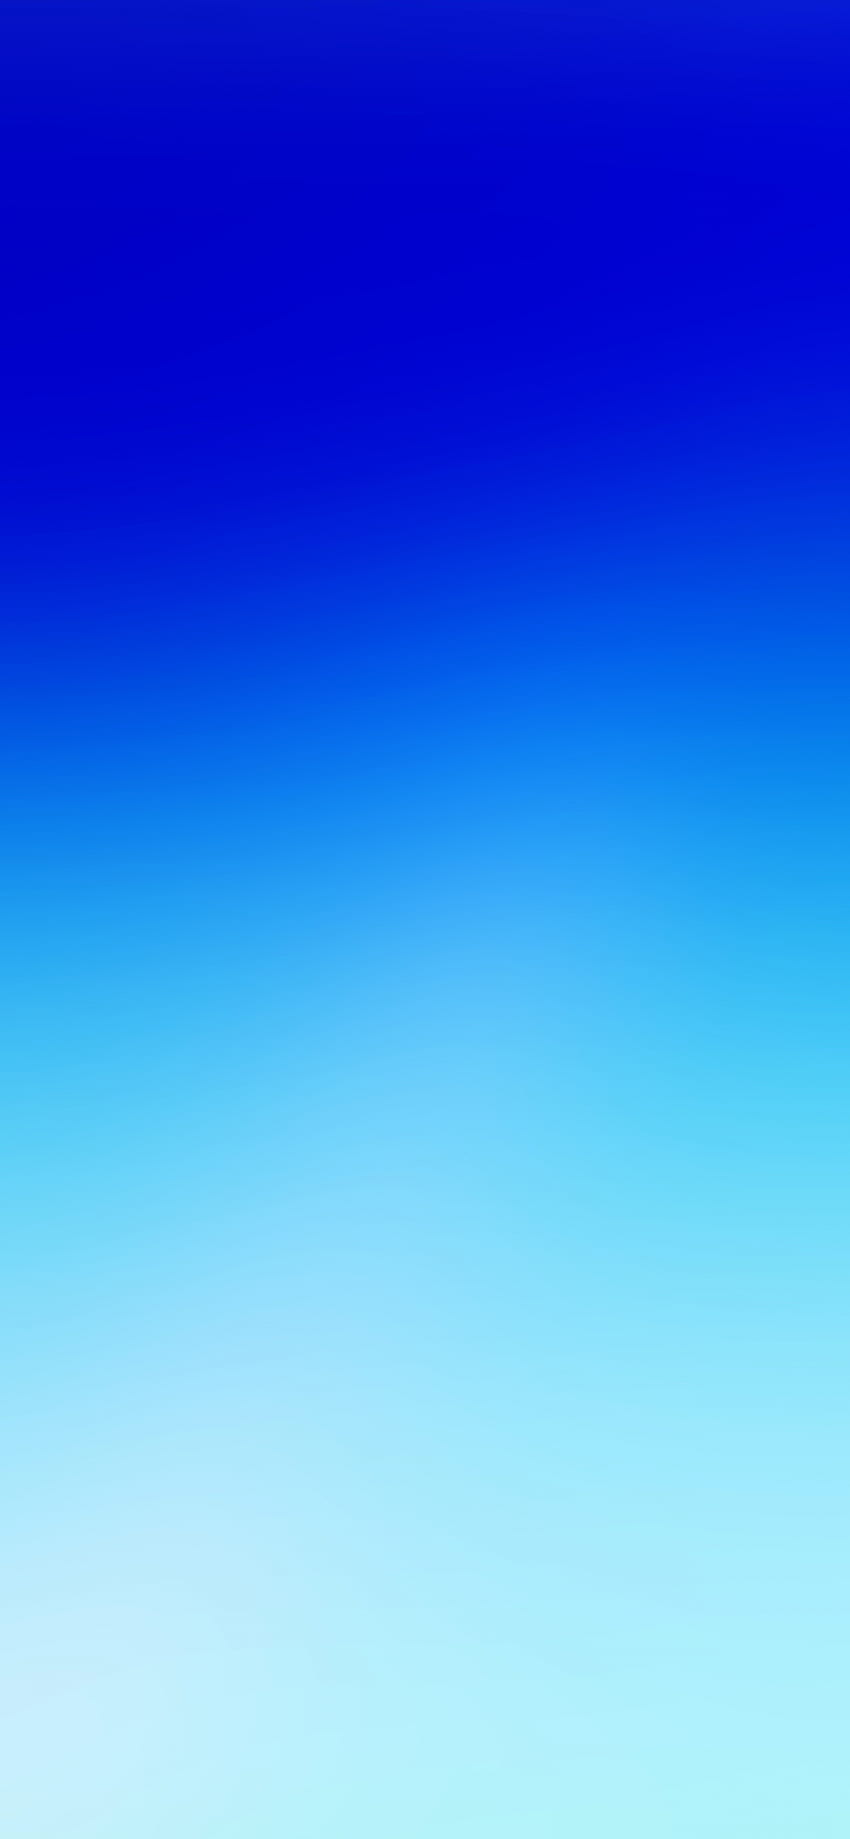 de iPhone azul Único iPhone de 10 colores sólidos Negro Blanco Gris Rojo Azul y más Ios Hacker Inspiration - Left of The Hudson fondo de pantalla del teléfono